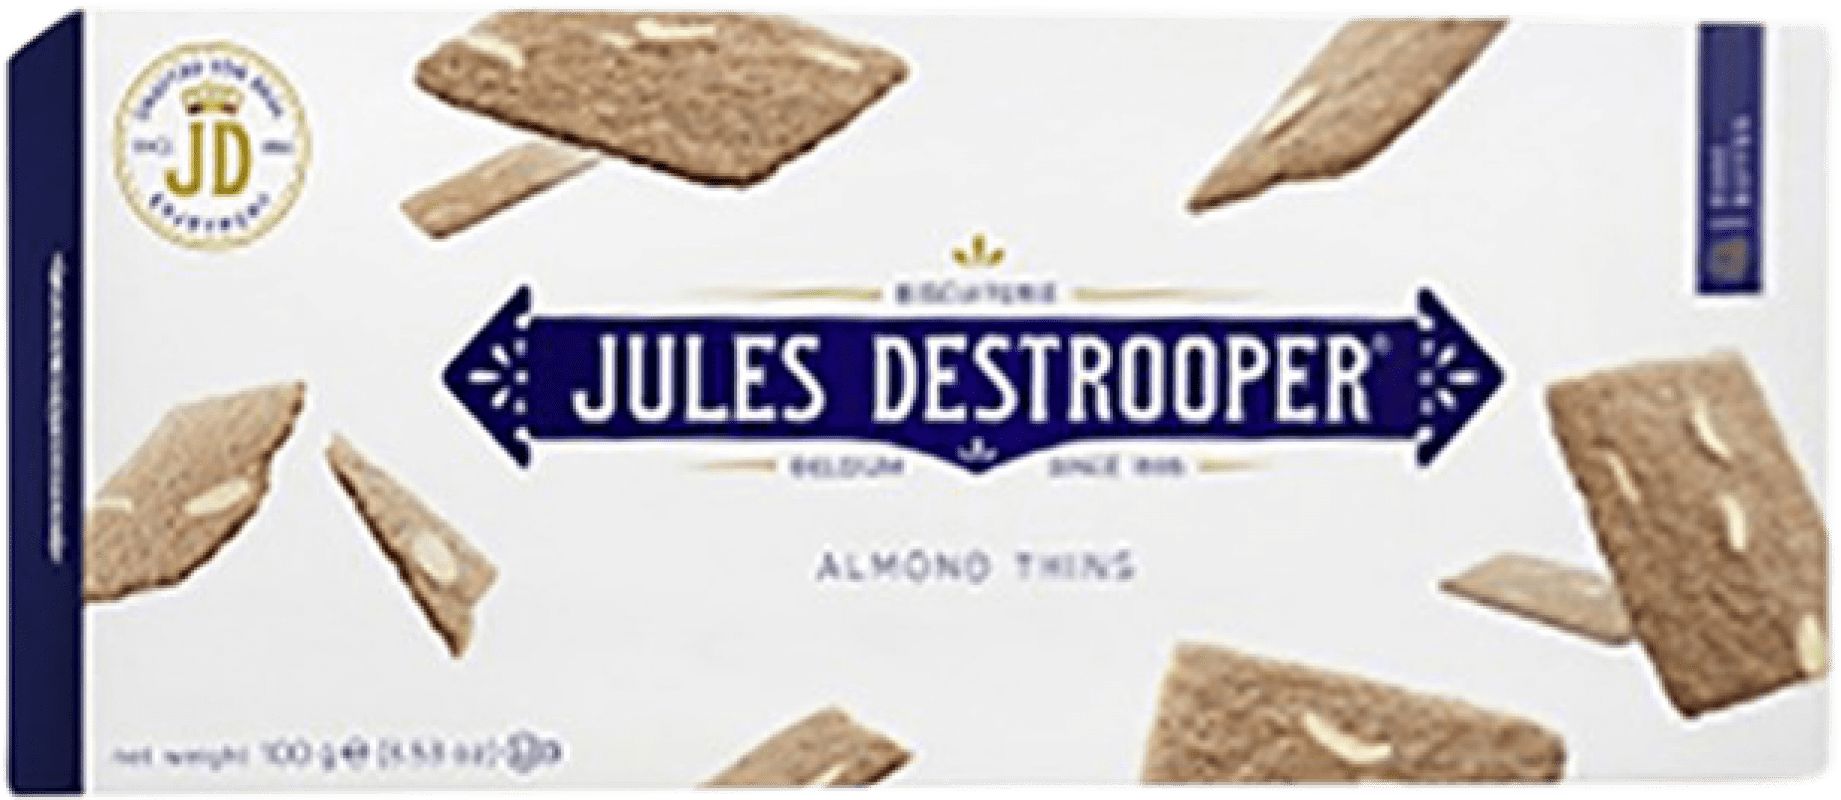 3,95 € Бесплатная доставка | Aperitivos y Snacks Jules Destrooper Destrooper Бельгия